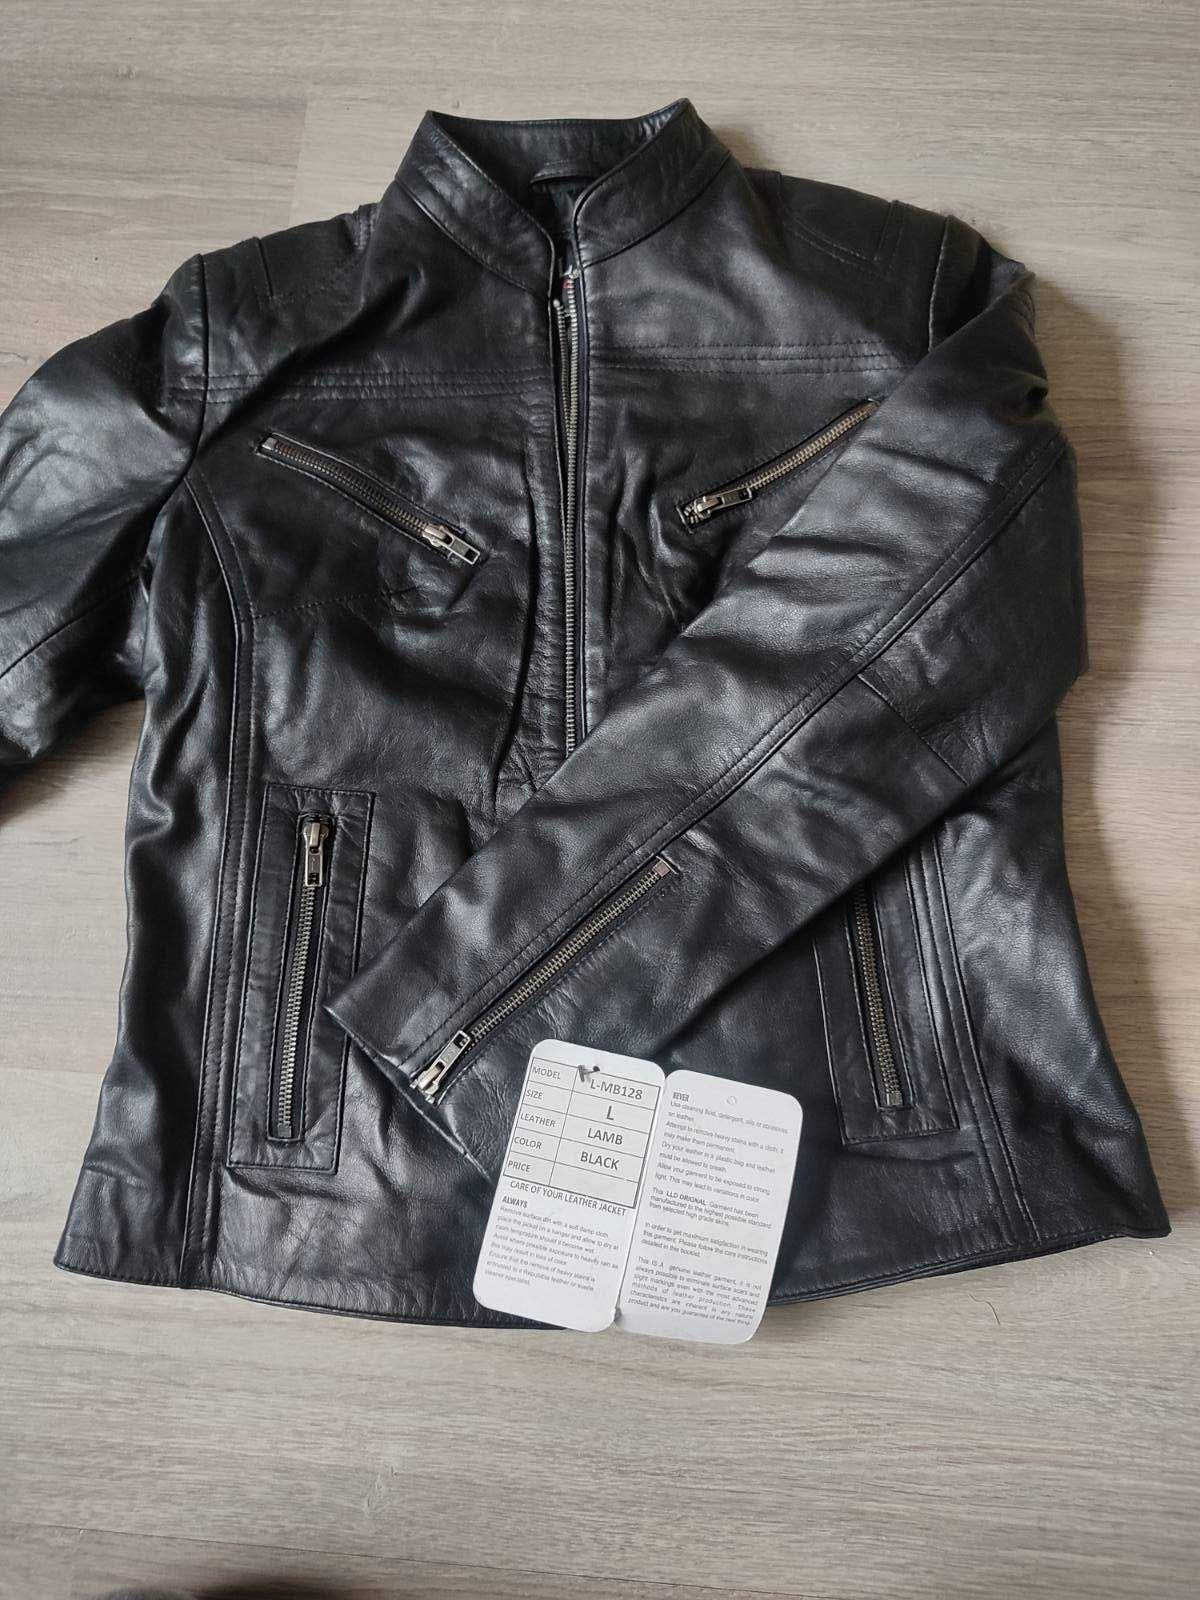 куртка курточка Греция черная кожа натуральная хорошего качества